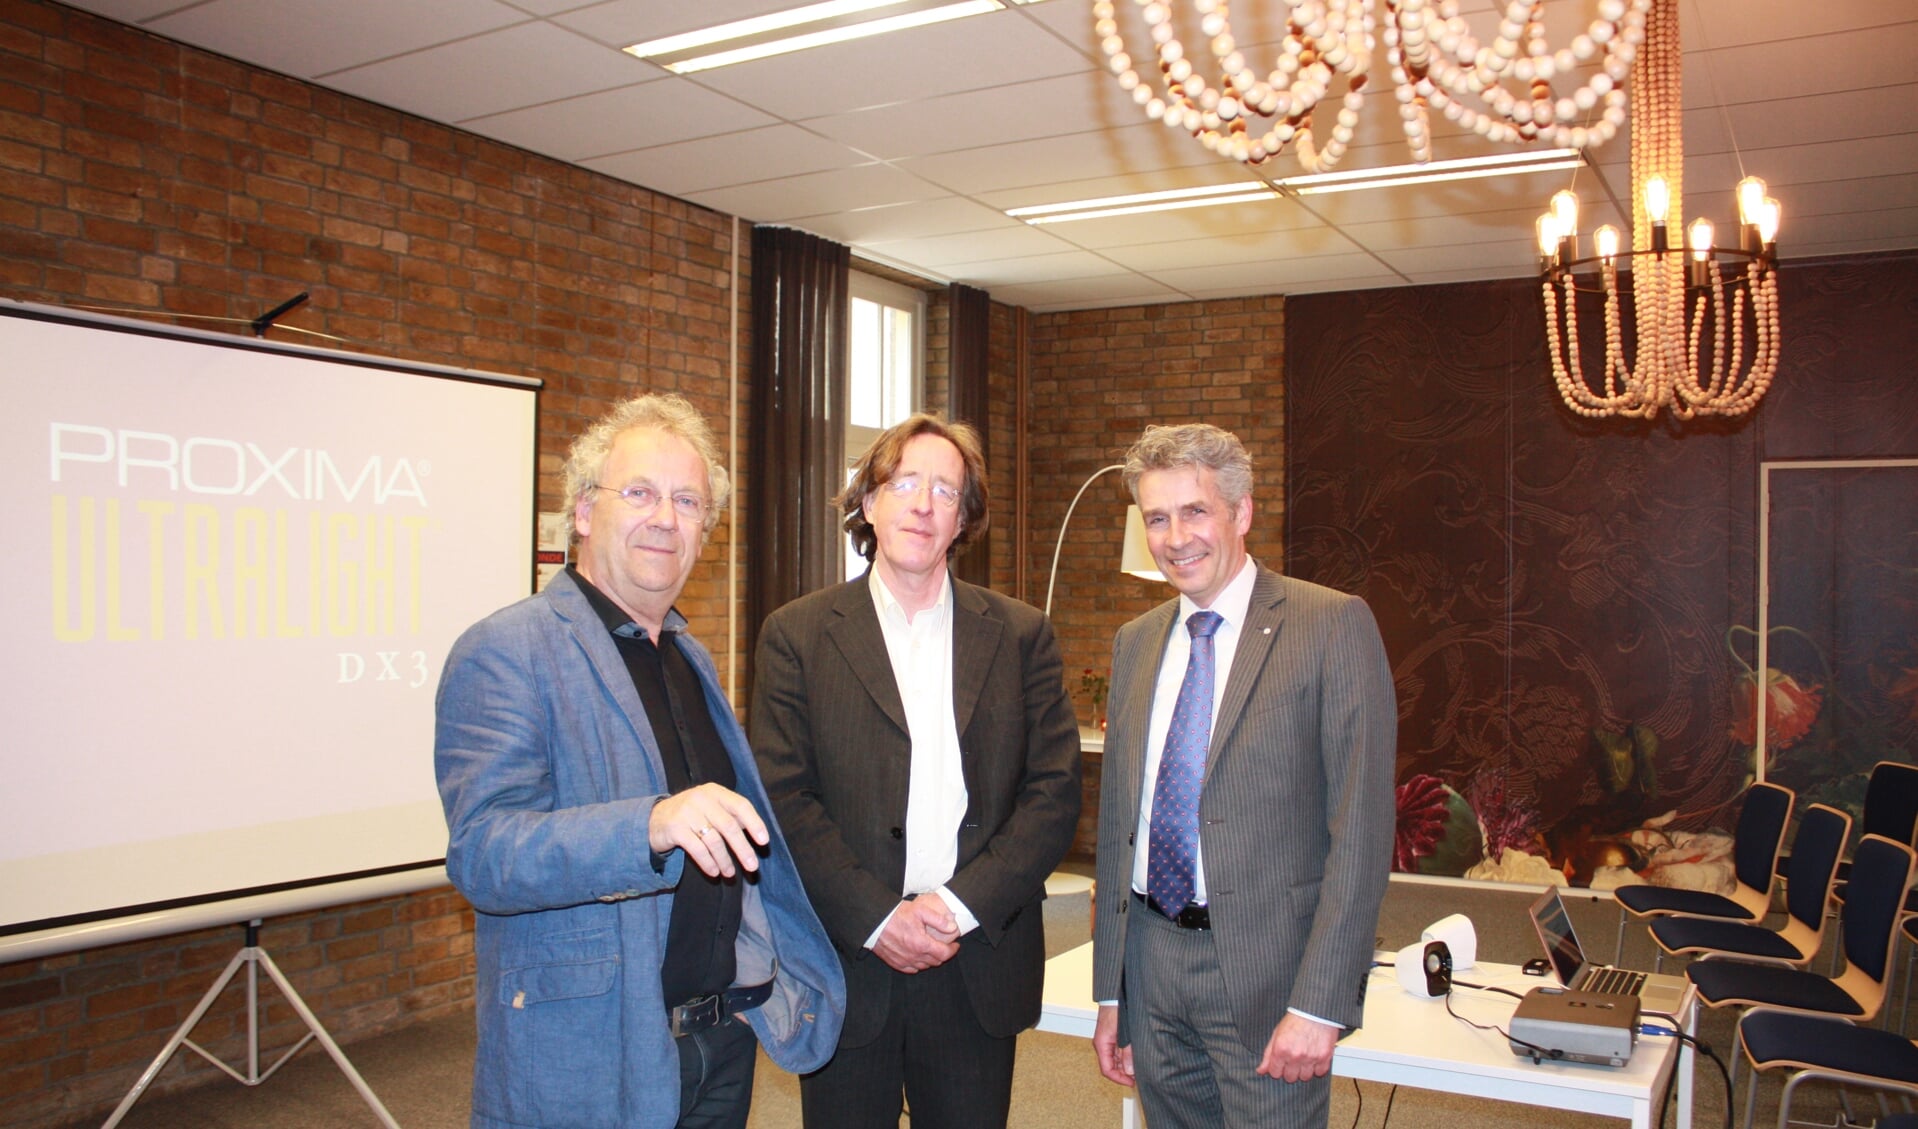  V.l.n.r. Nico Adrichem, Ed Bausch en Erik Minnema.
